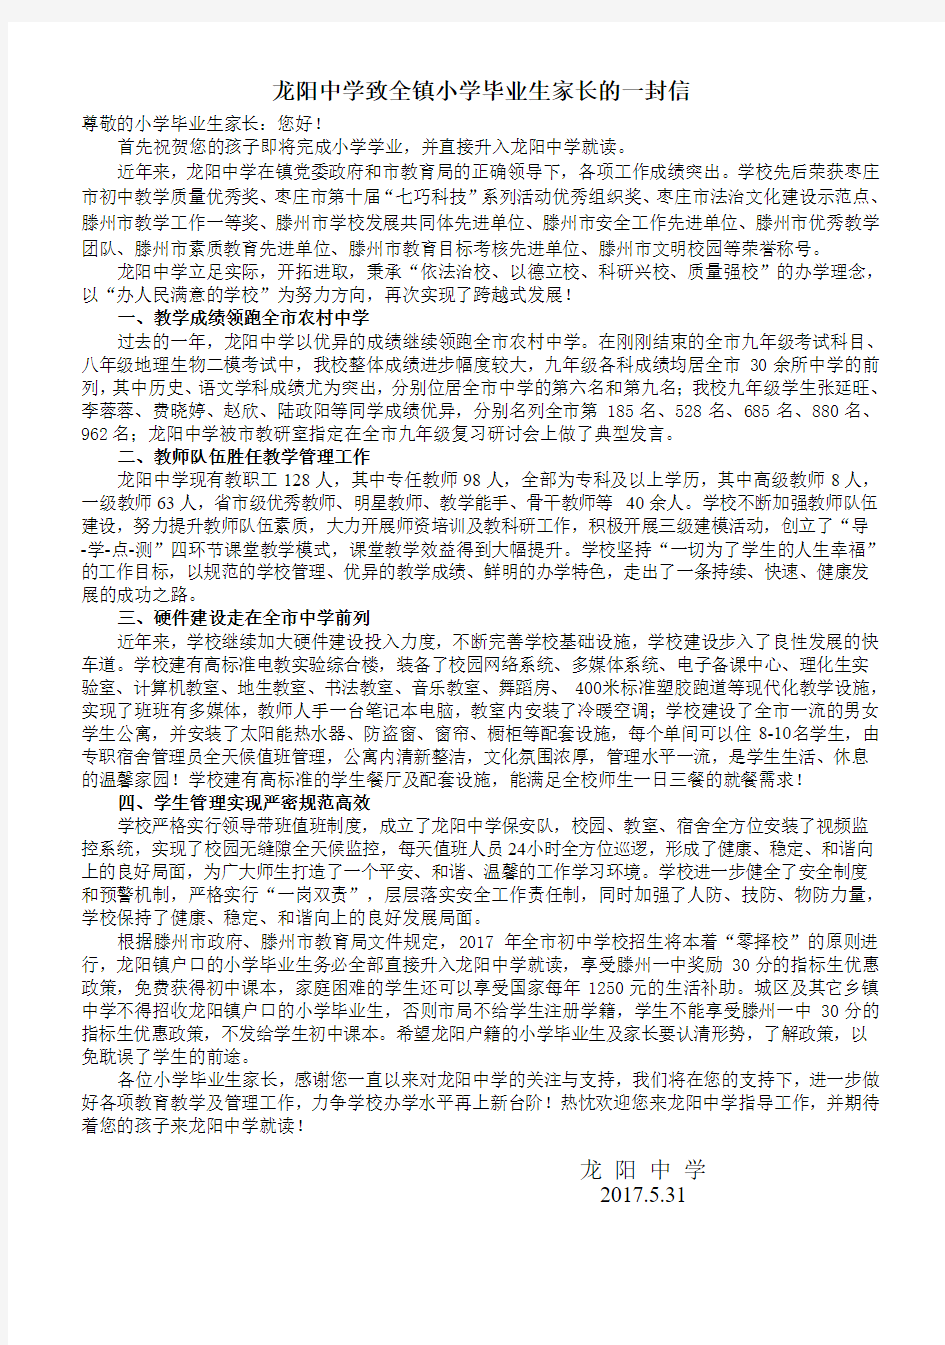 龙阳中学致全镇小学毕业生家长的一封信 2017.5